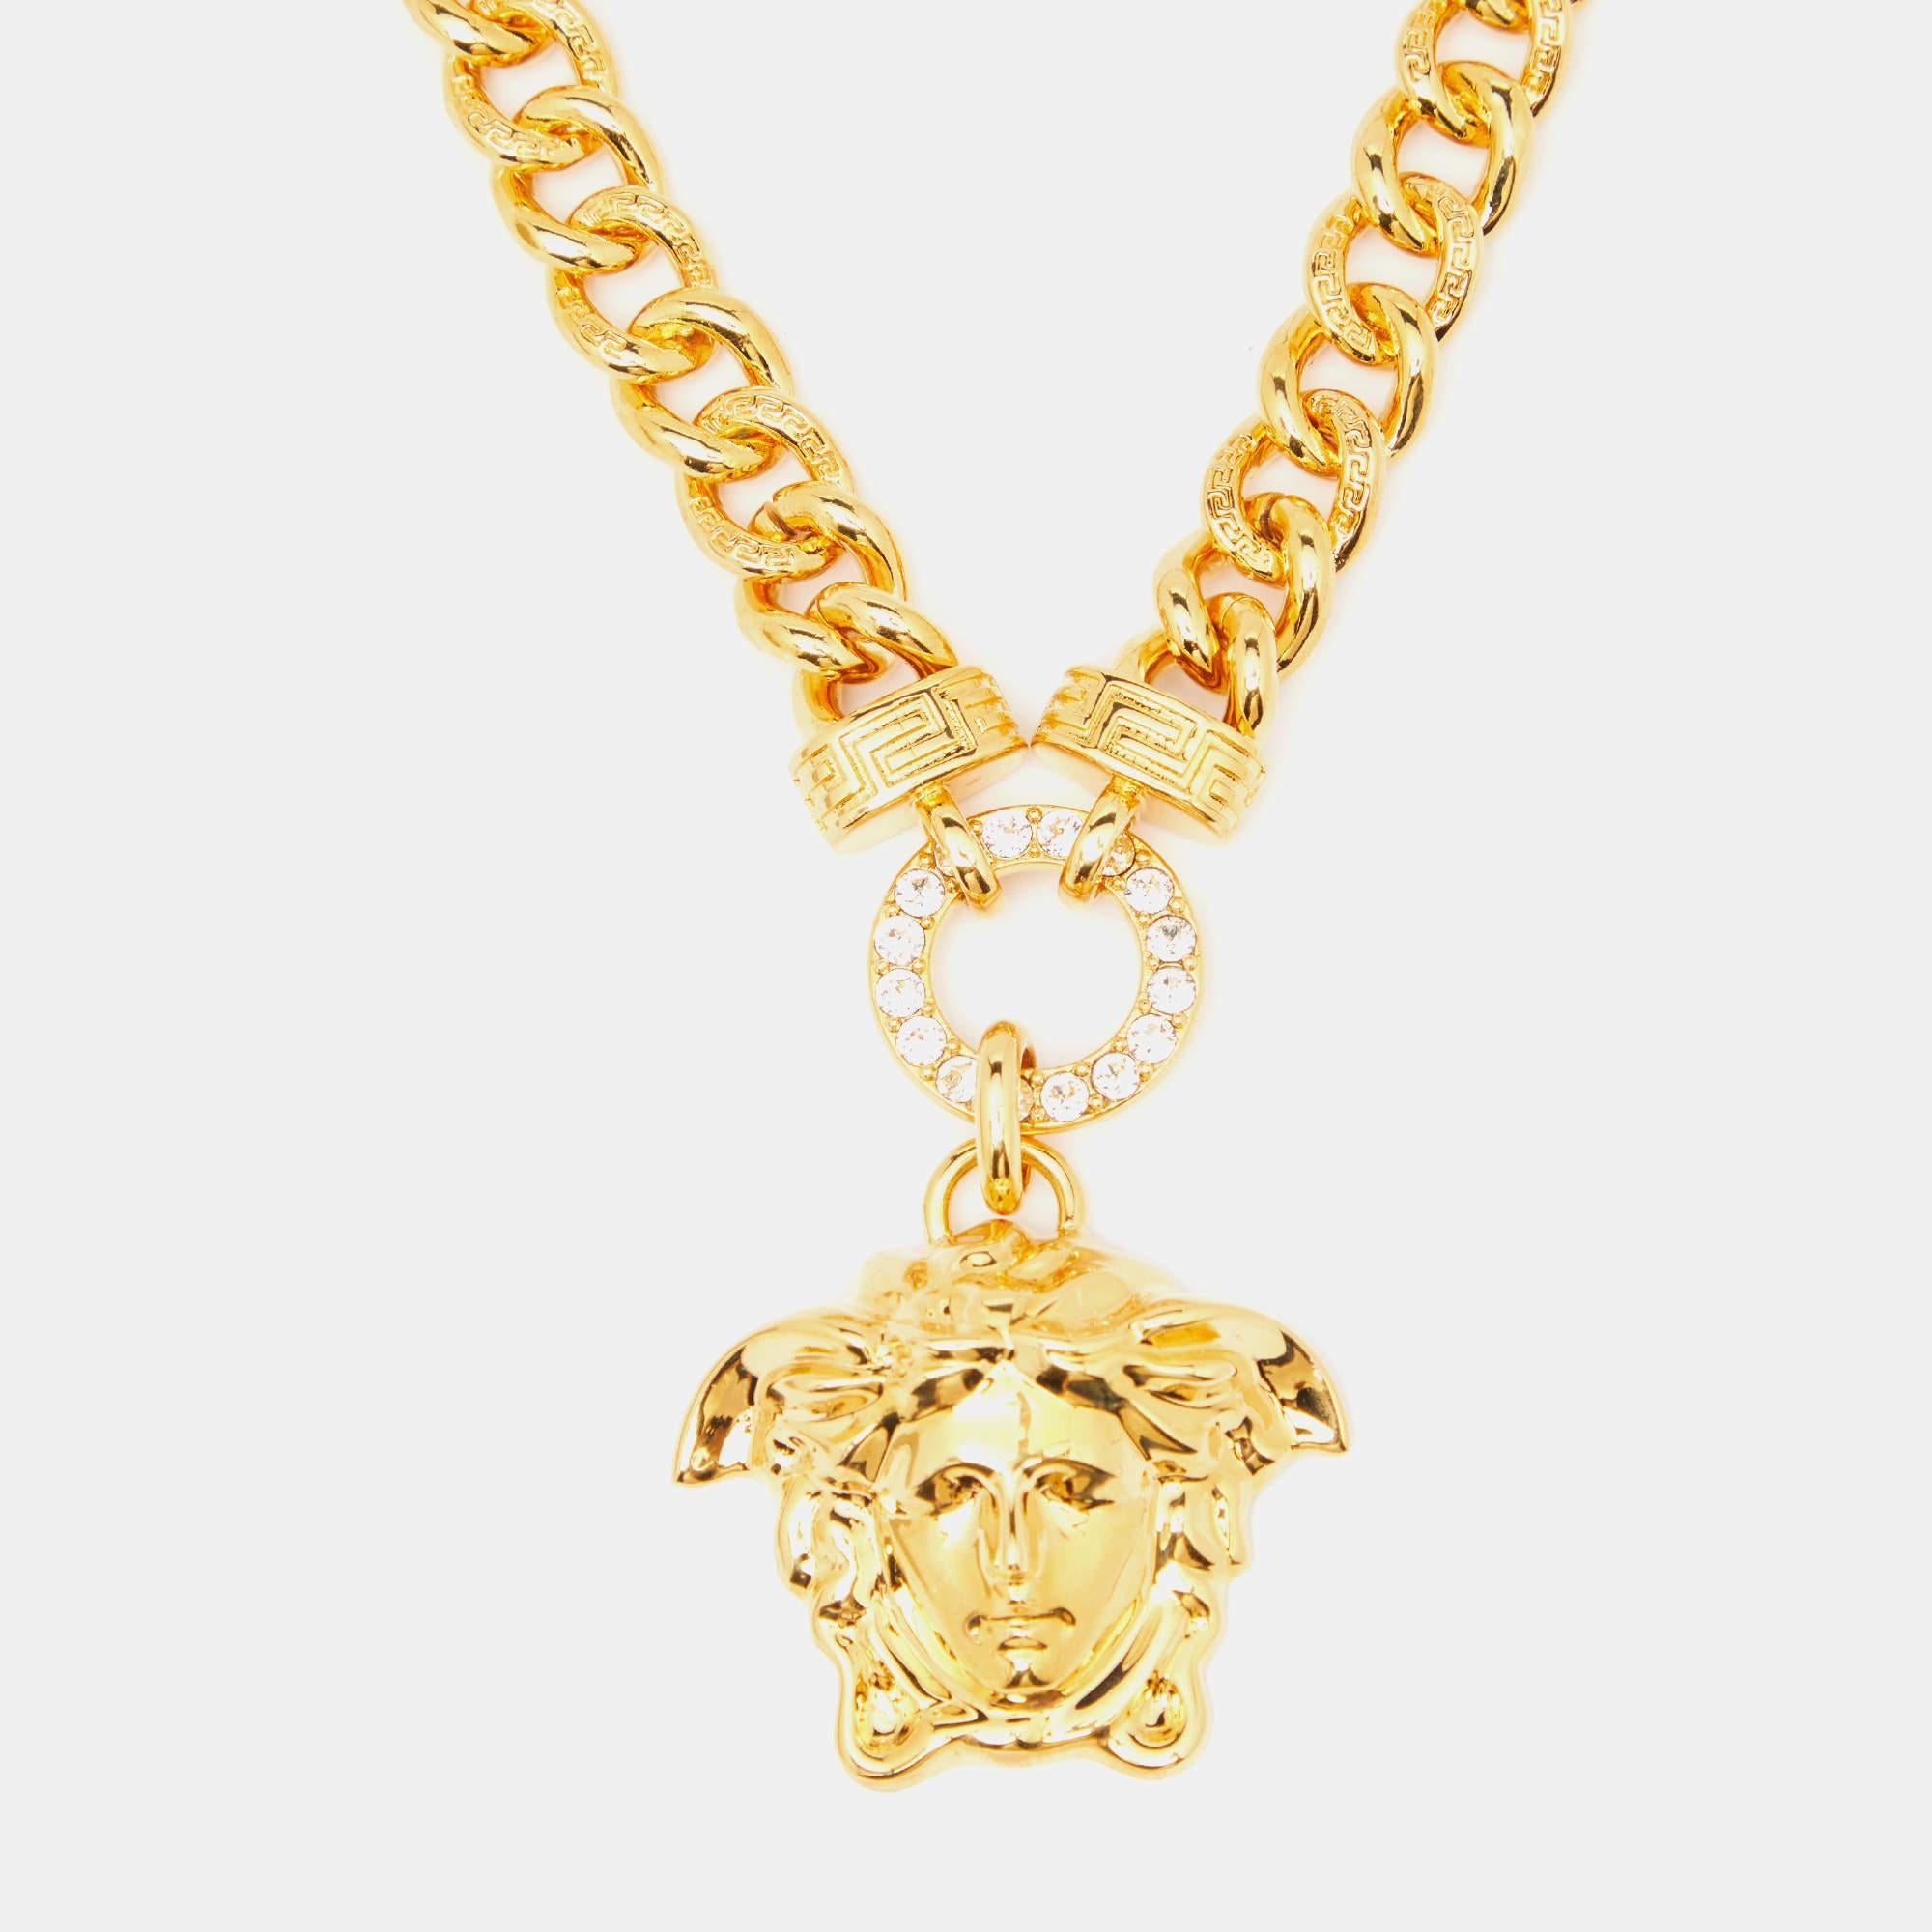 Schmücken Sie sich mit der opulenten Anziehungskraft der Versace-Halskette. Das mit viel Liebe zum Detail gefertigte Schmuckstück zeigt ein auffälliges, mit funkelnden Kristallen besetztes Medusa-Emblem vor einem schimmernden goldfarbenen